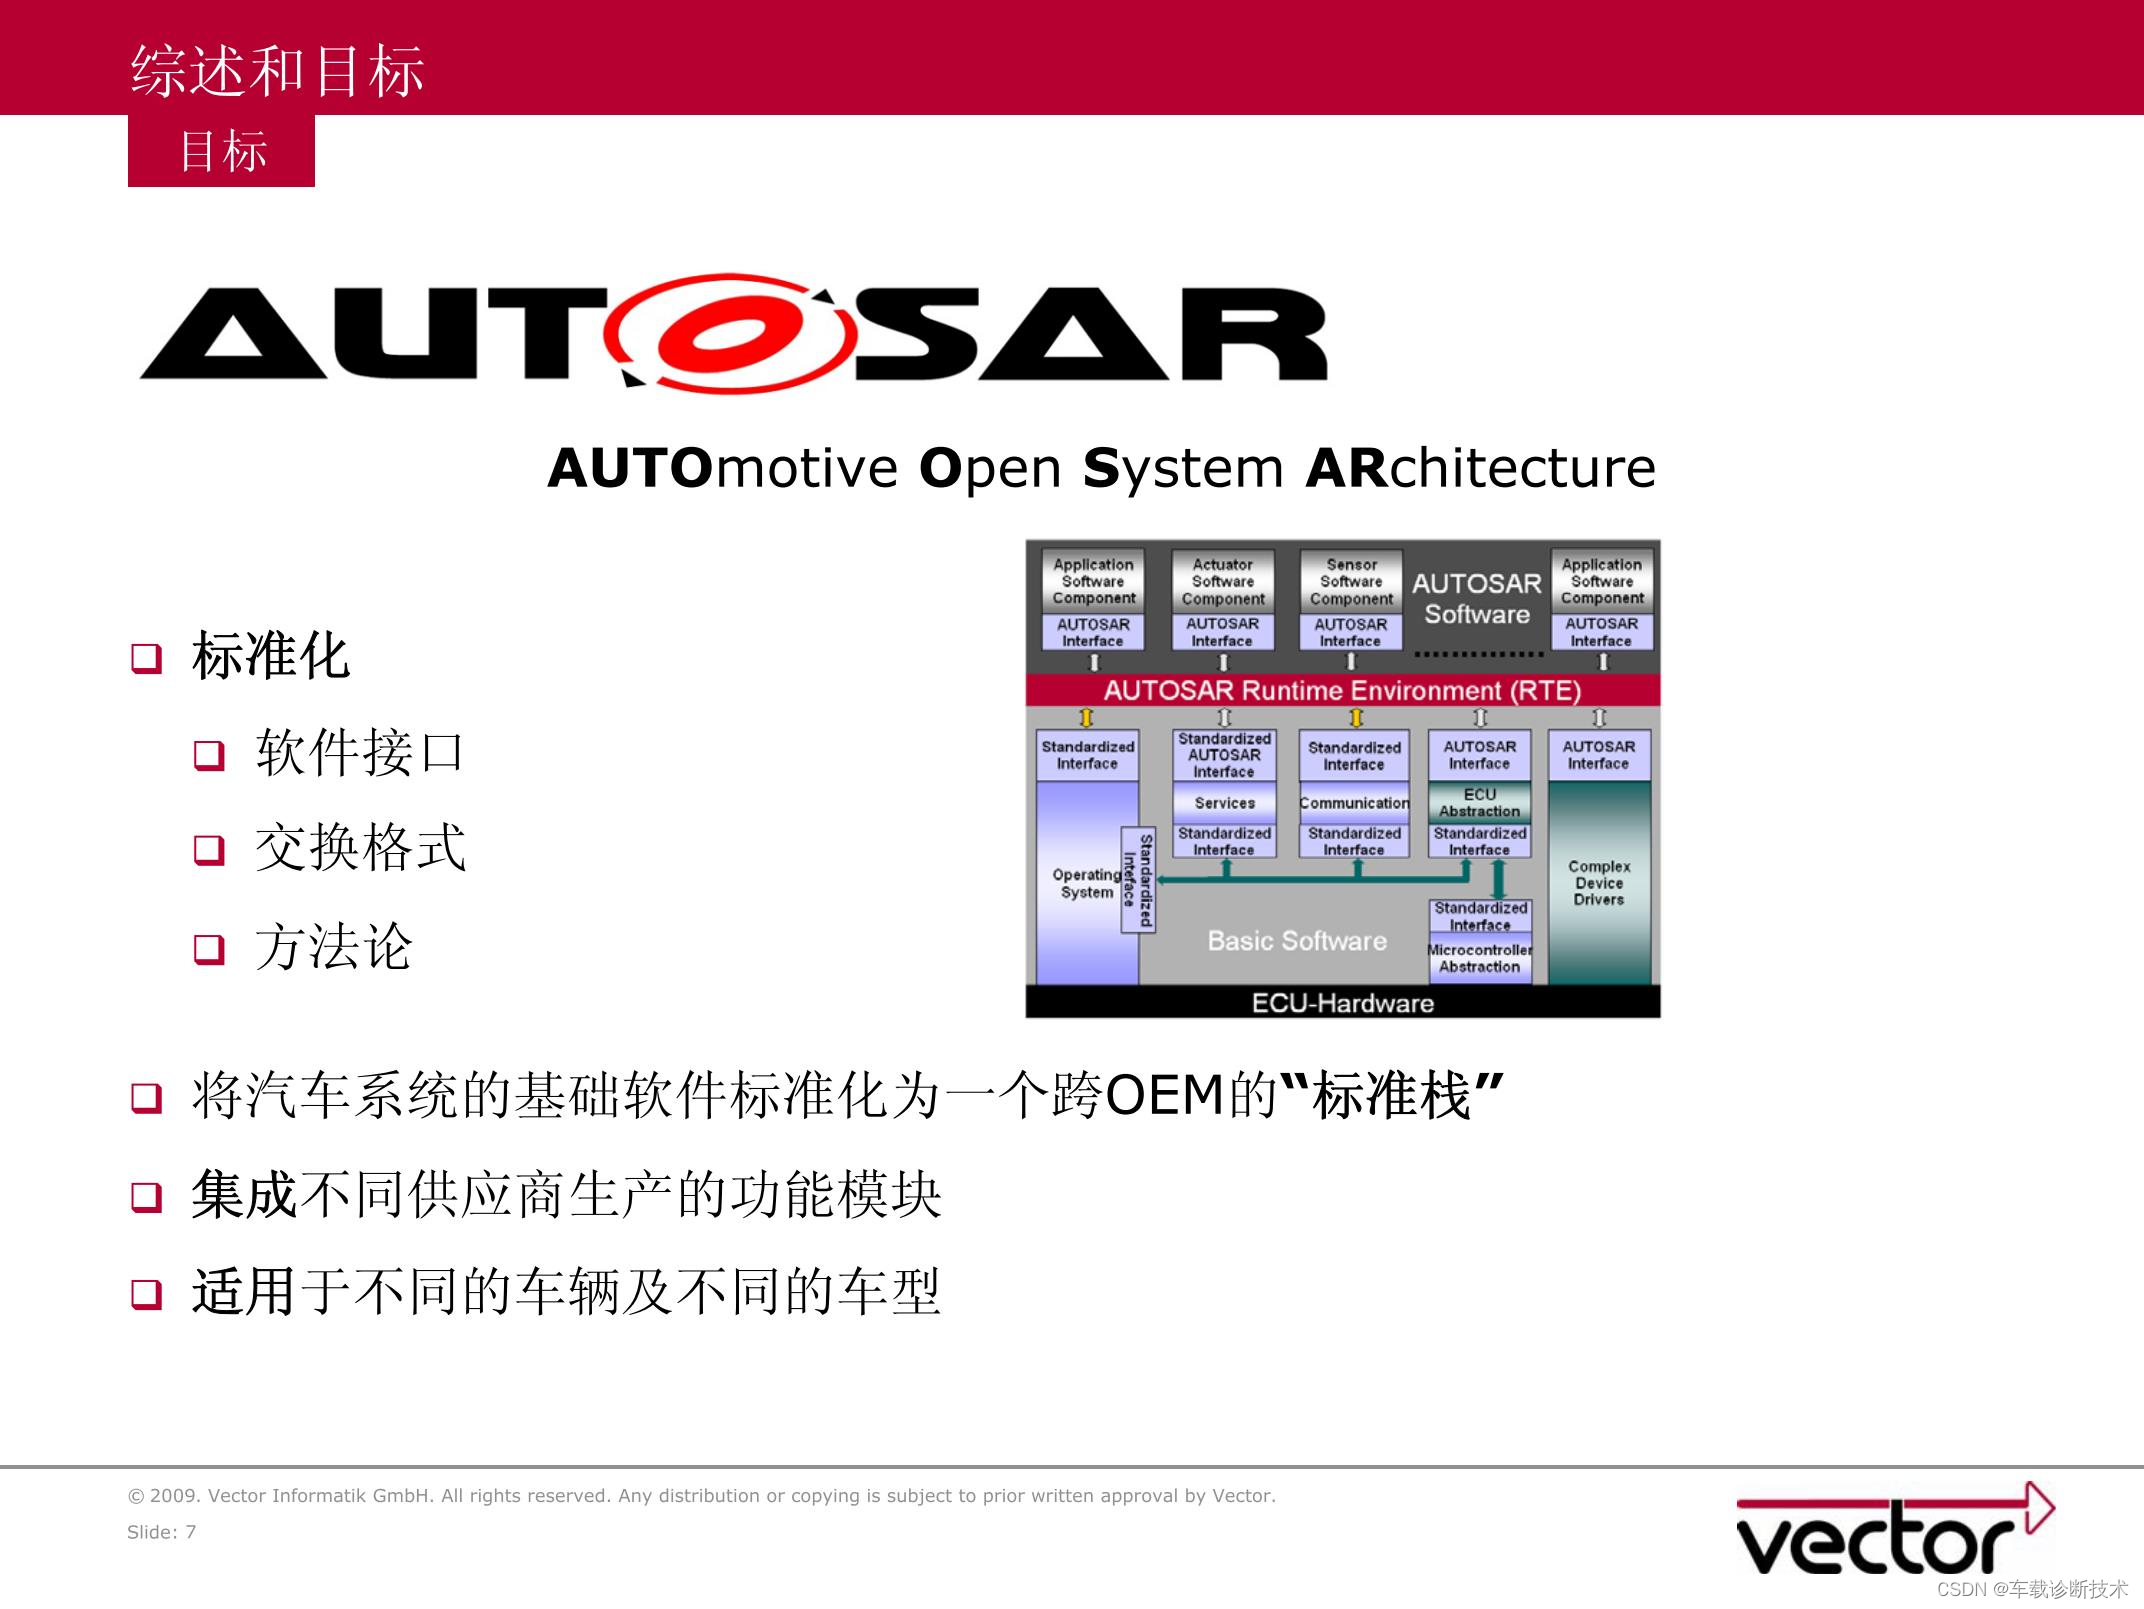 汽车电子工程师入门系列——汽车操作系统架构学习研究-AUTOSAR